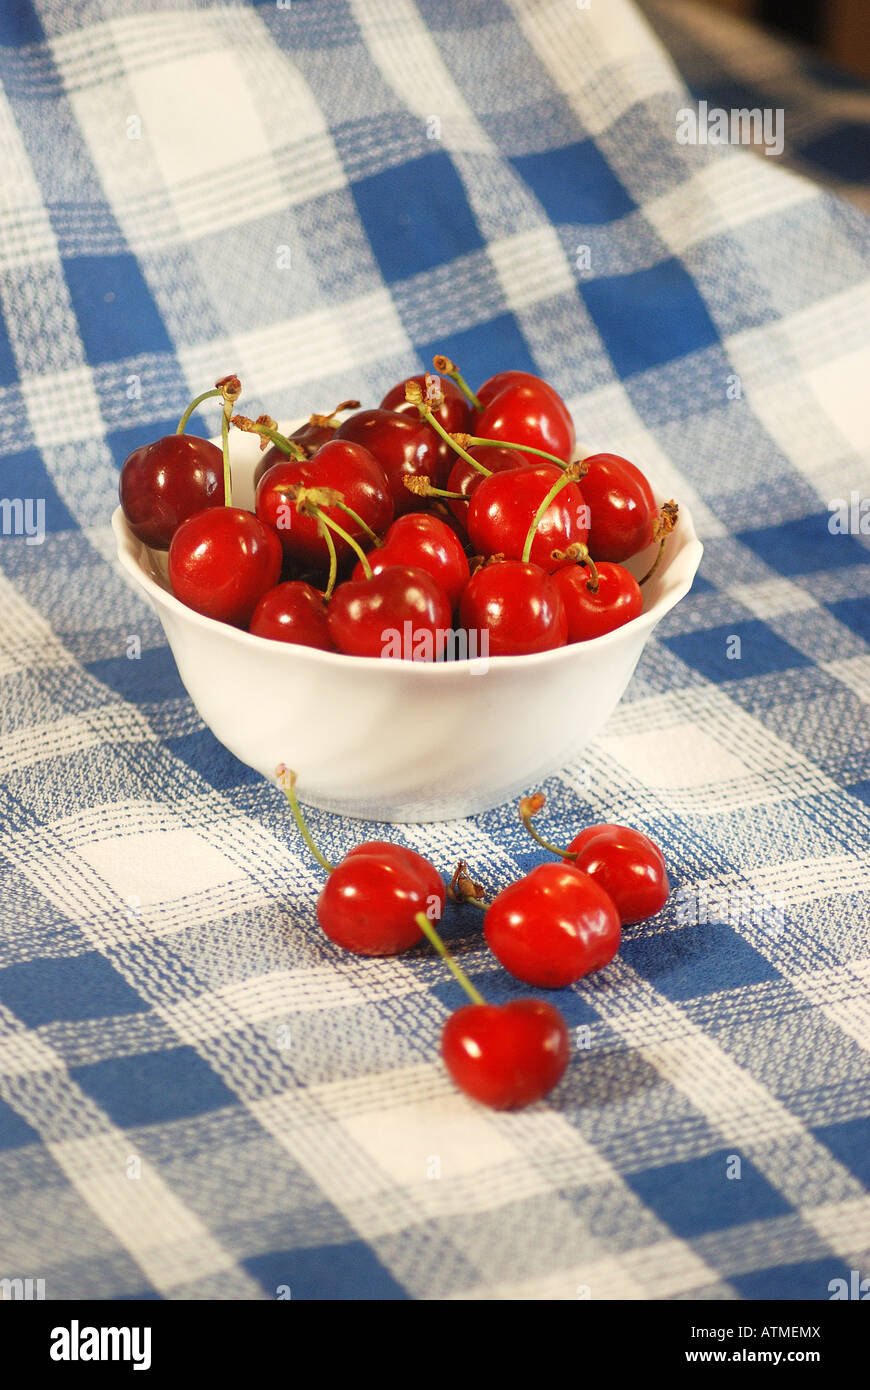 Bowl of cherries. Stock Photo